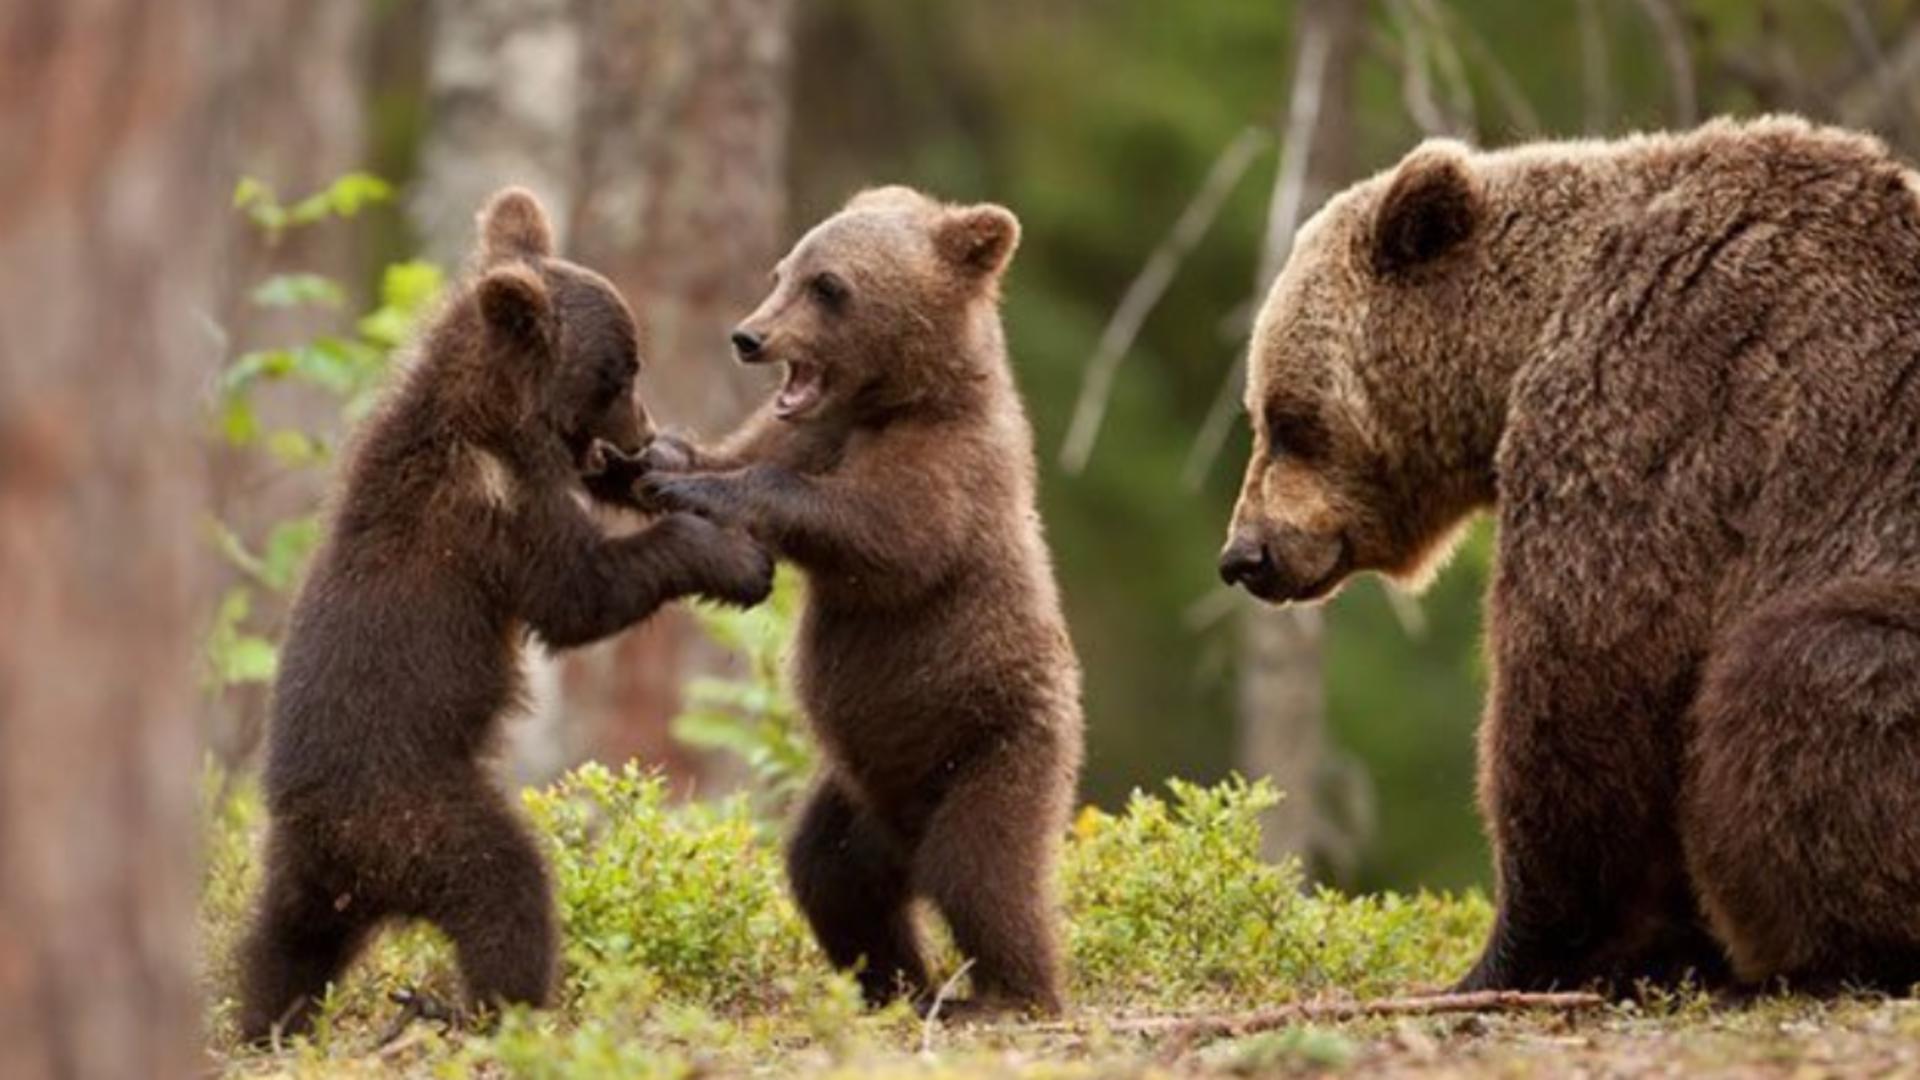 Pericol extrem în Prahova! O ursoaică și trei pui, la doi pași de oameni - Imagini terifiante